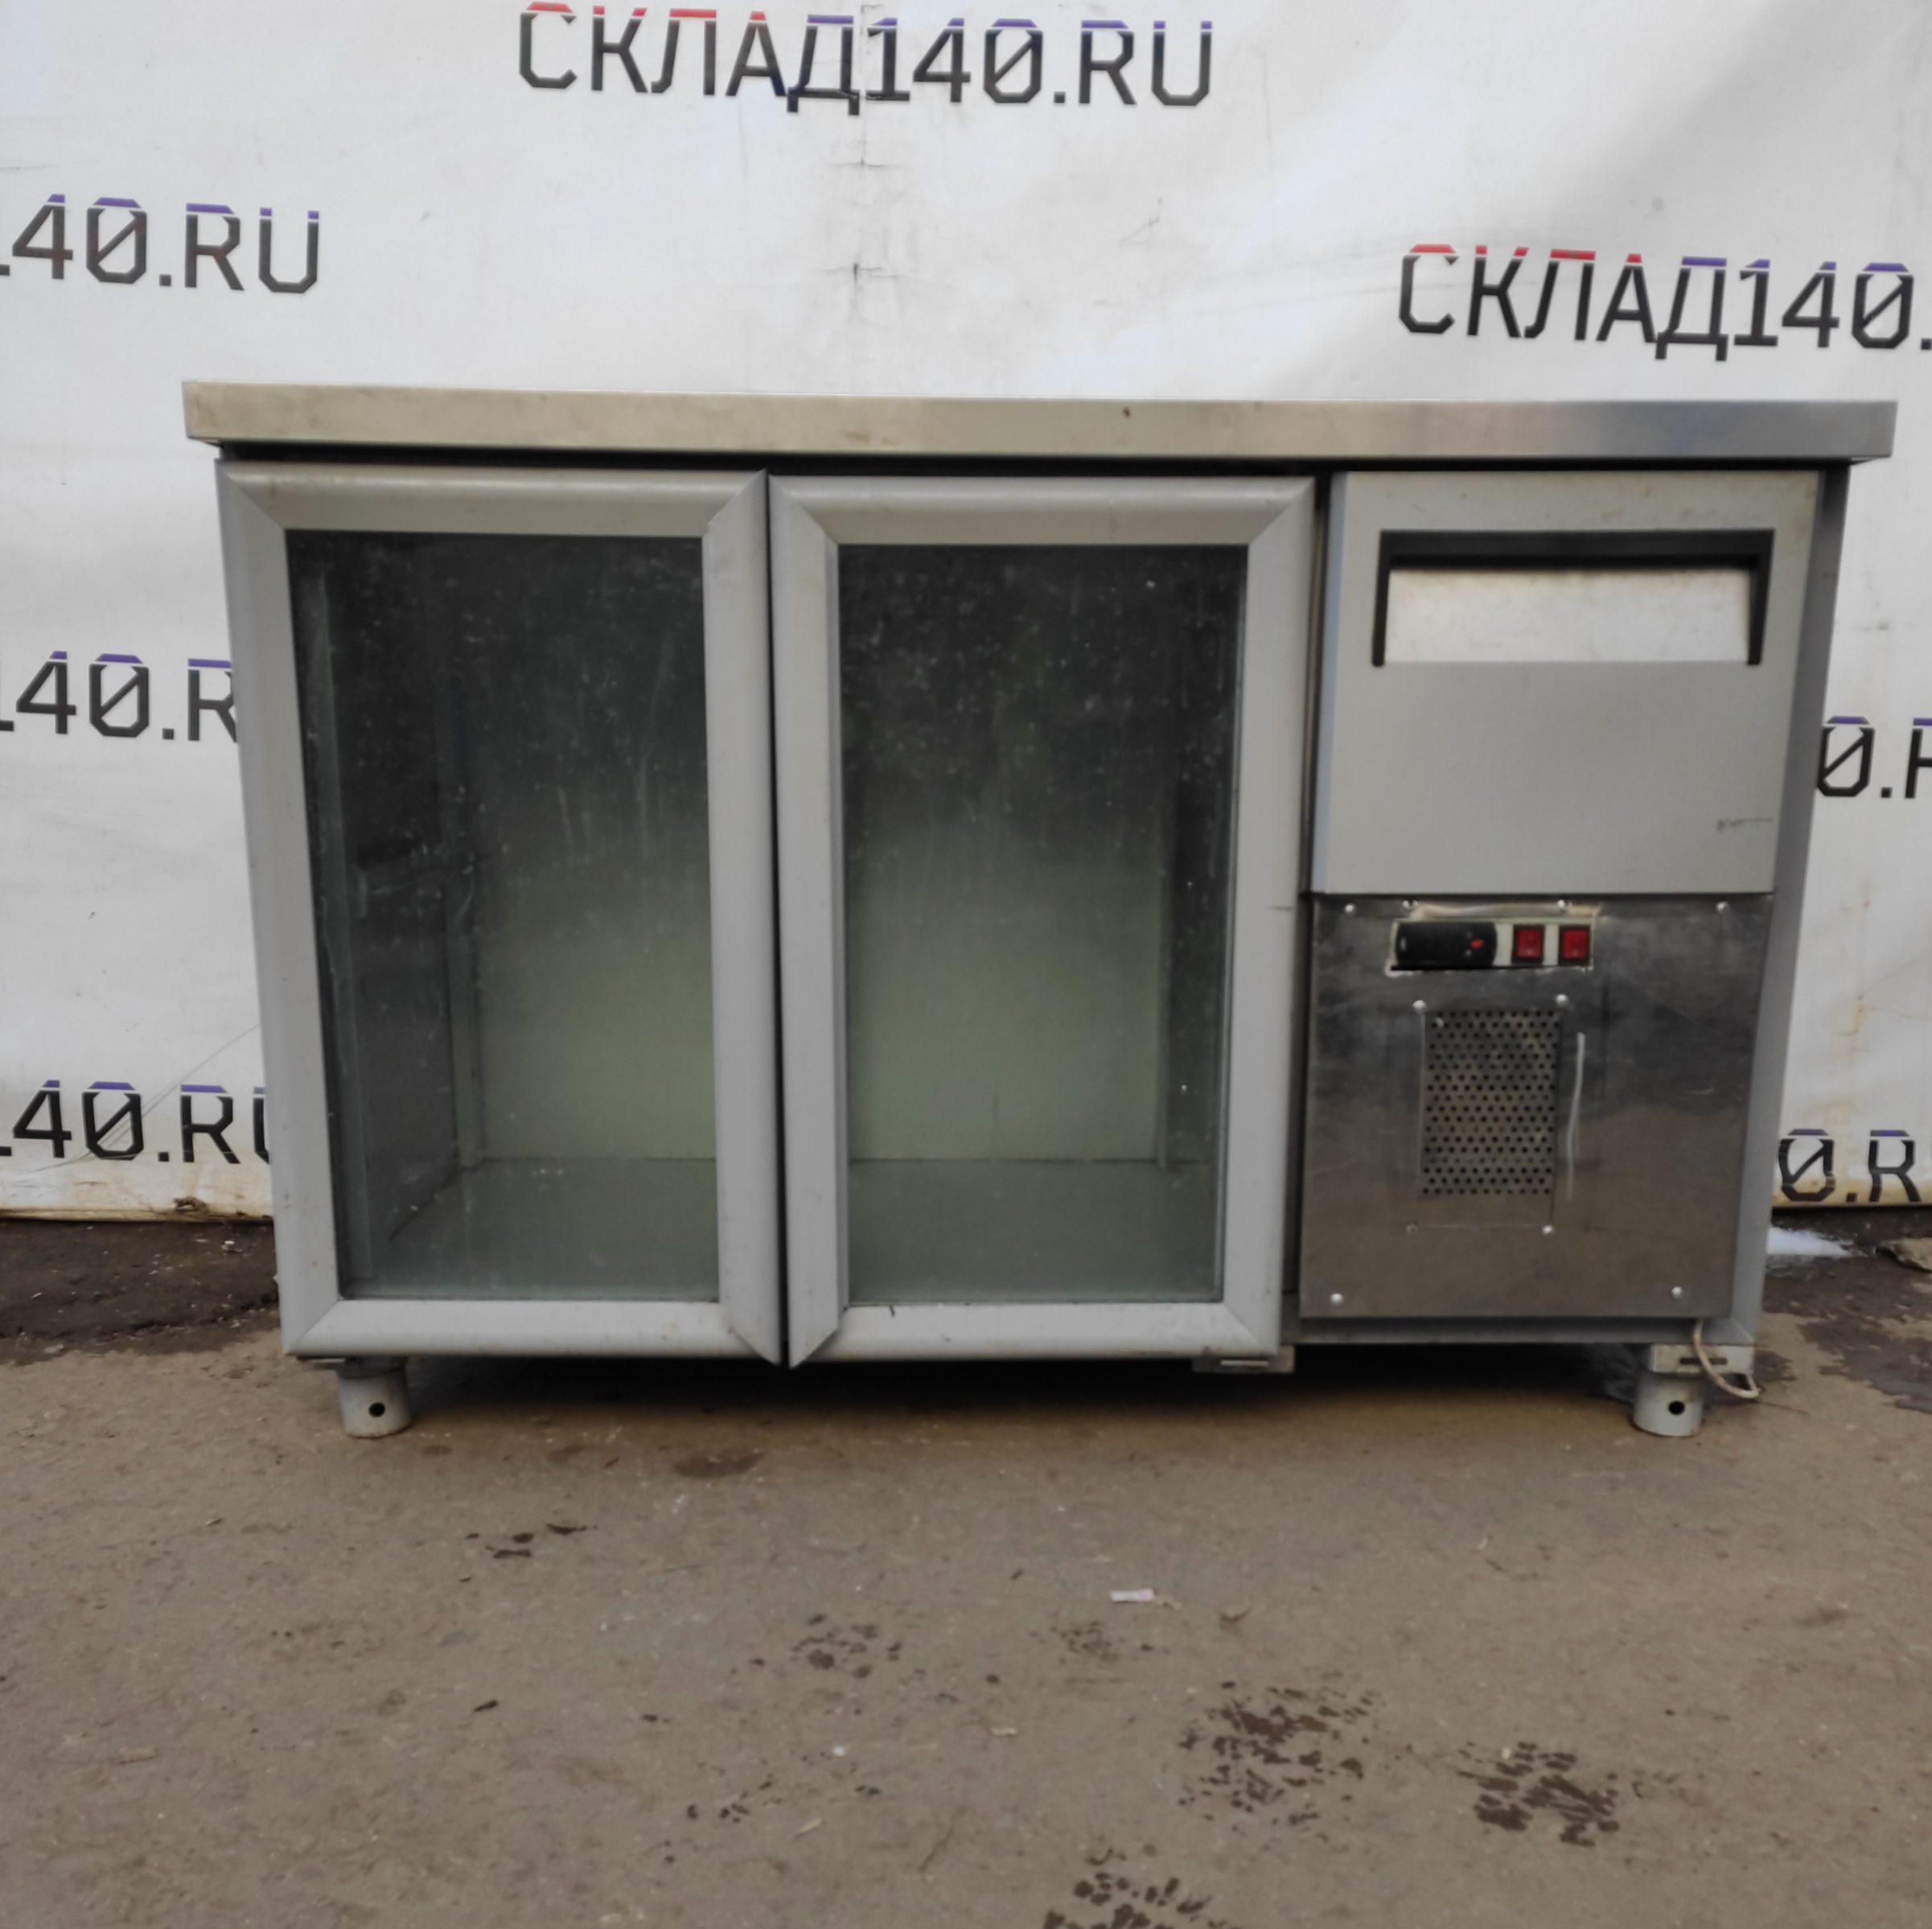 Купить Стол холодильный Полюс BAR-250 C